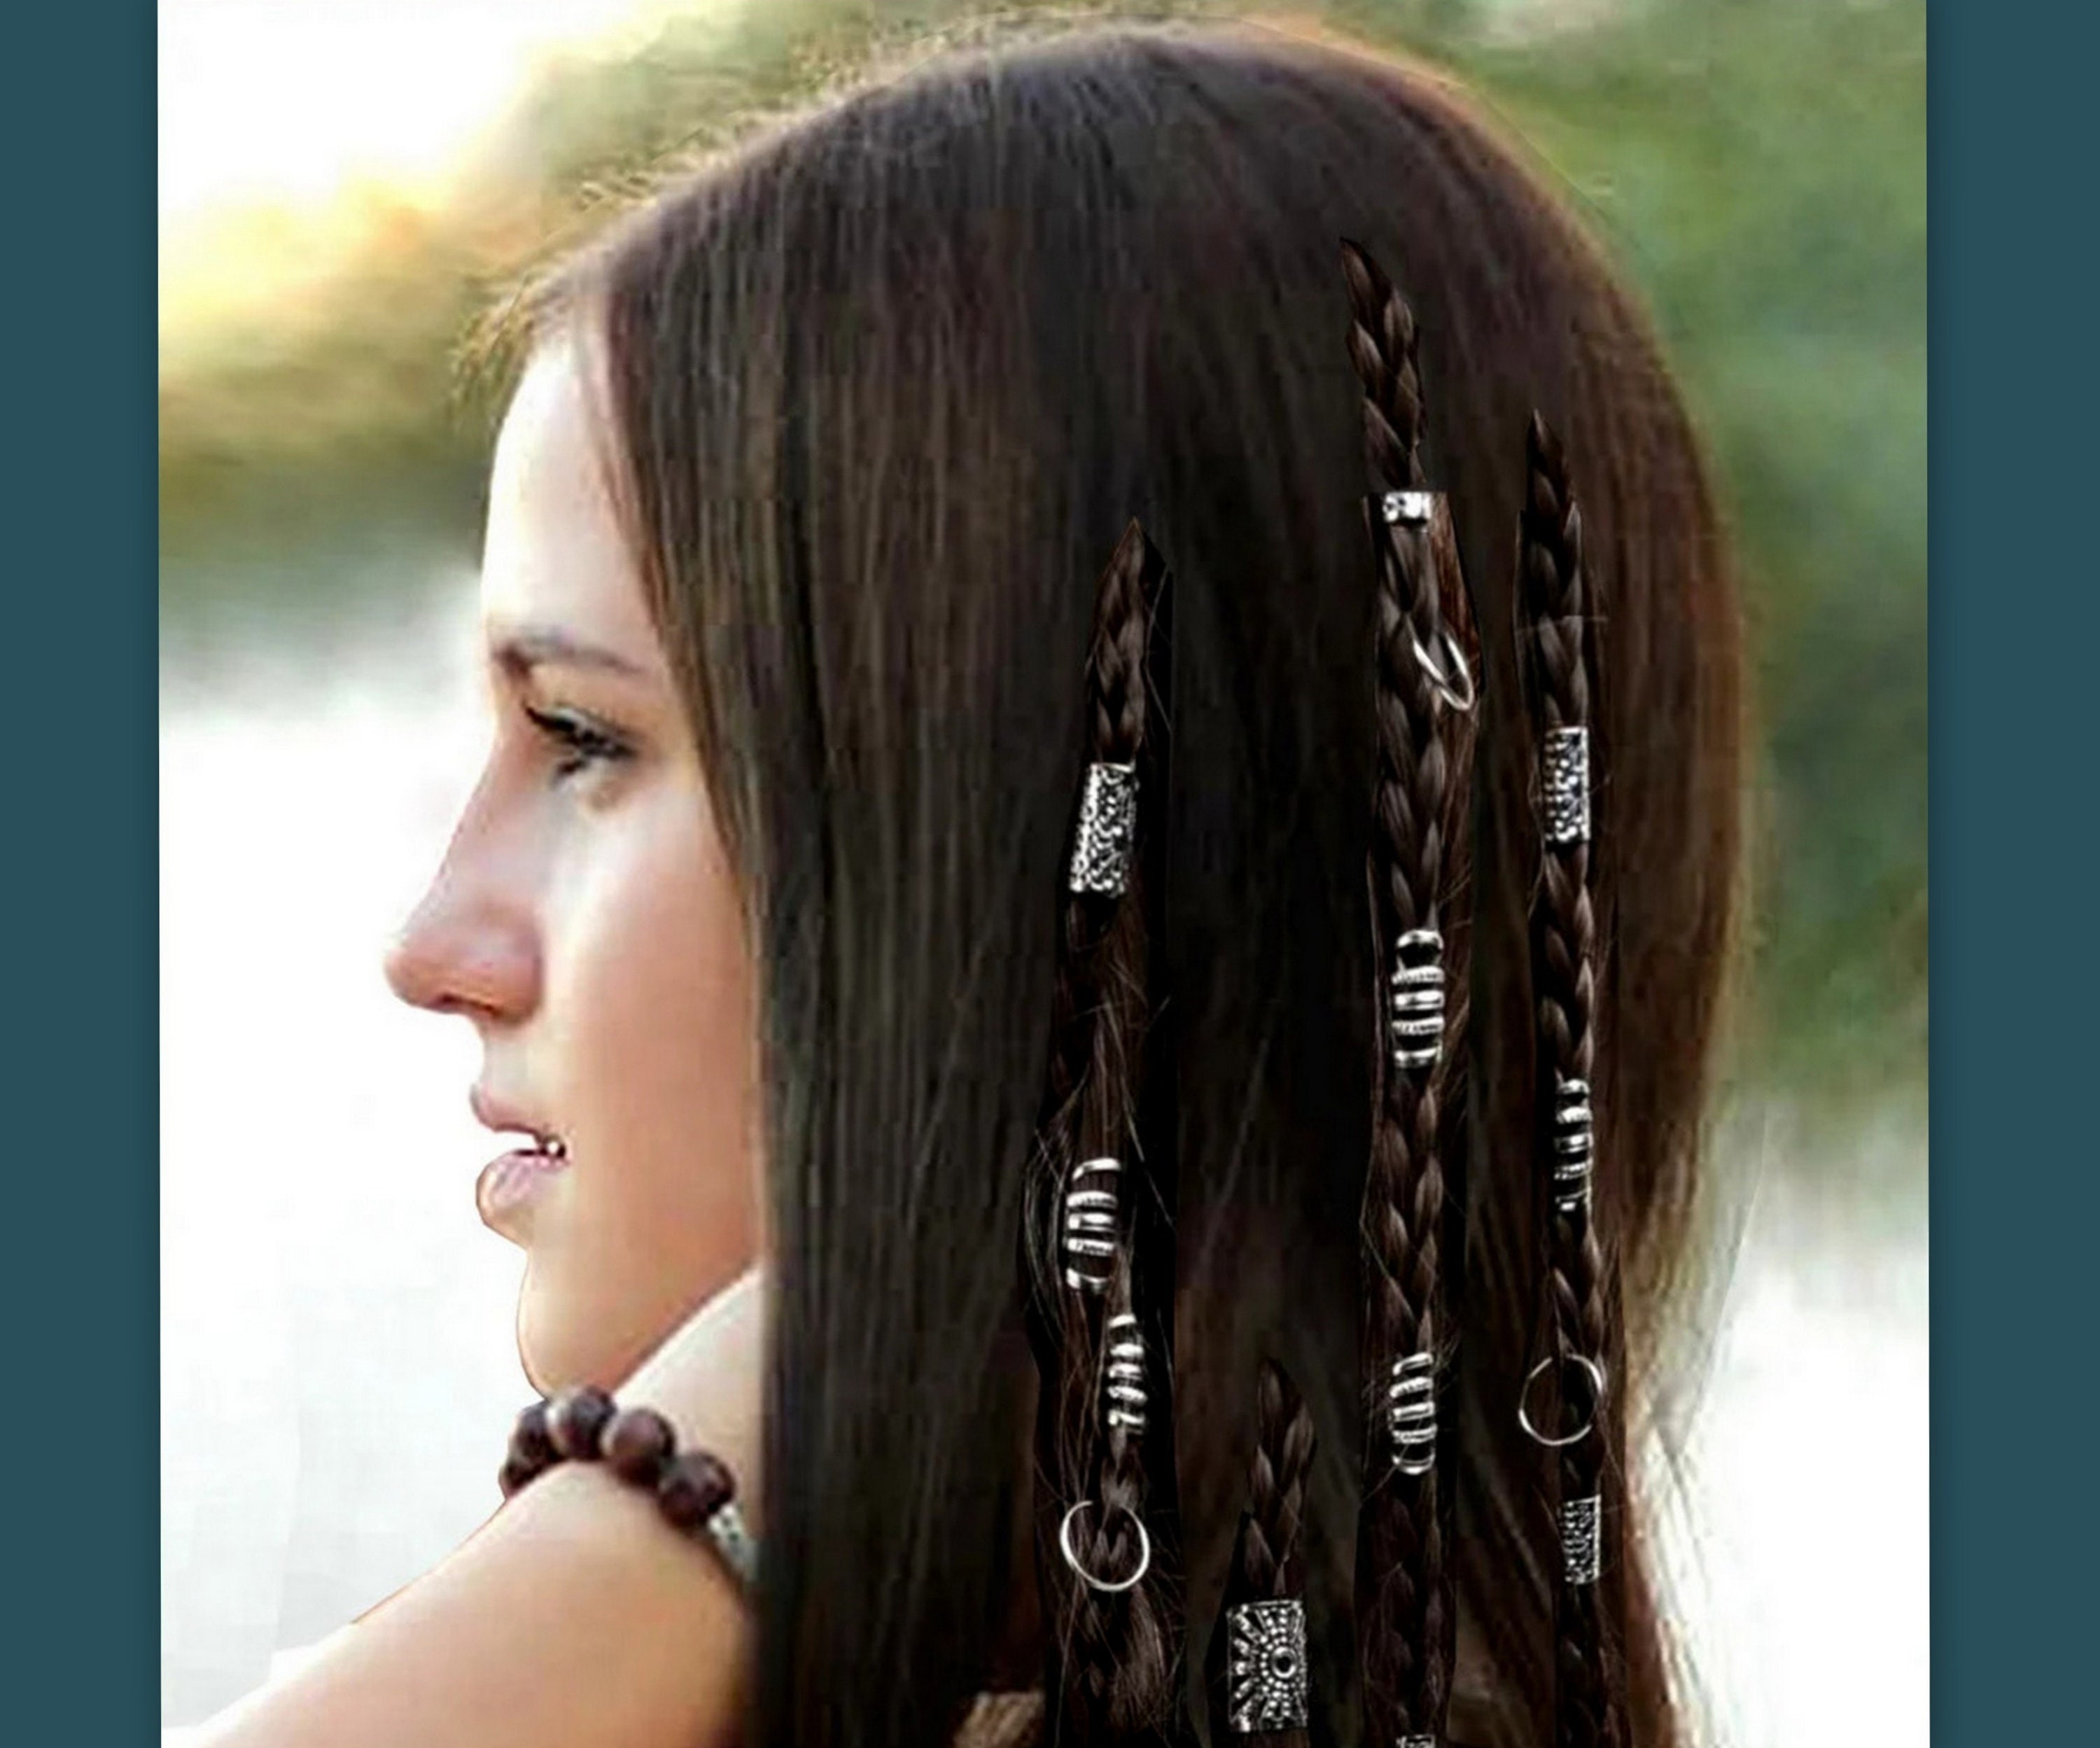 Handmade hairstyle - sweet picture  Long hair styles, Metallic hair, Hair  cuffs